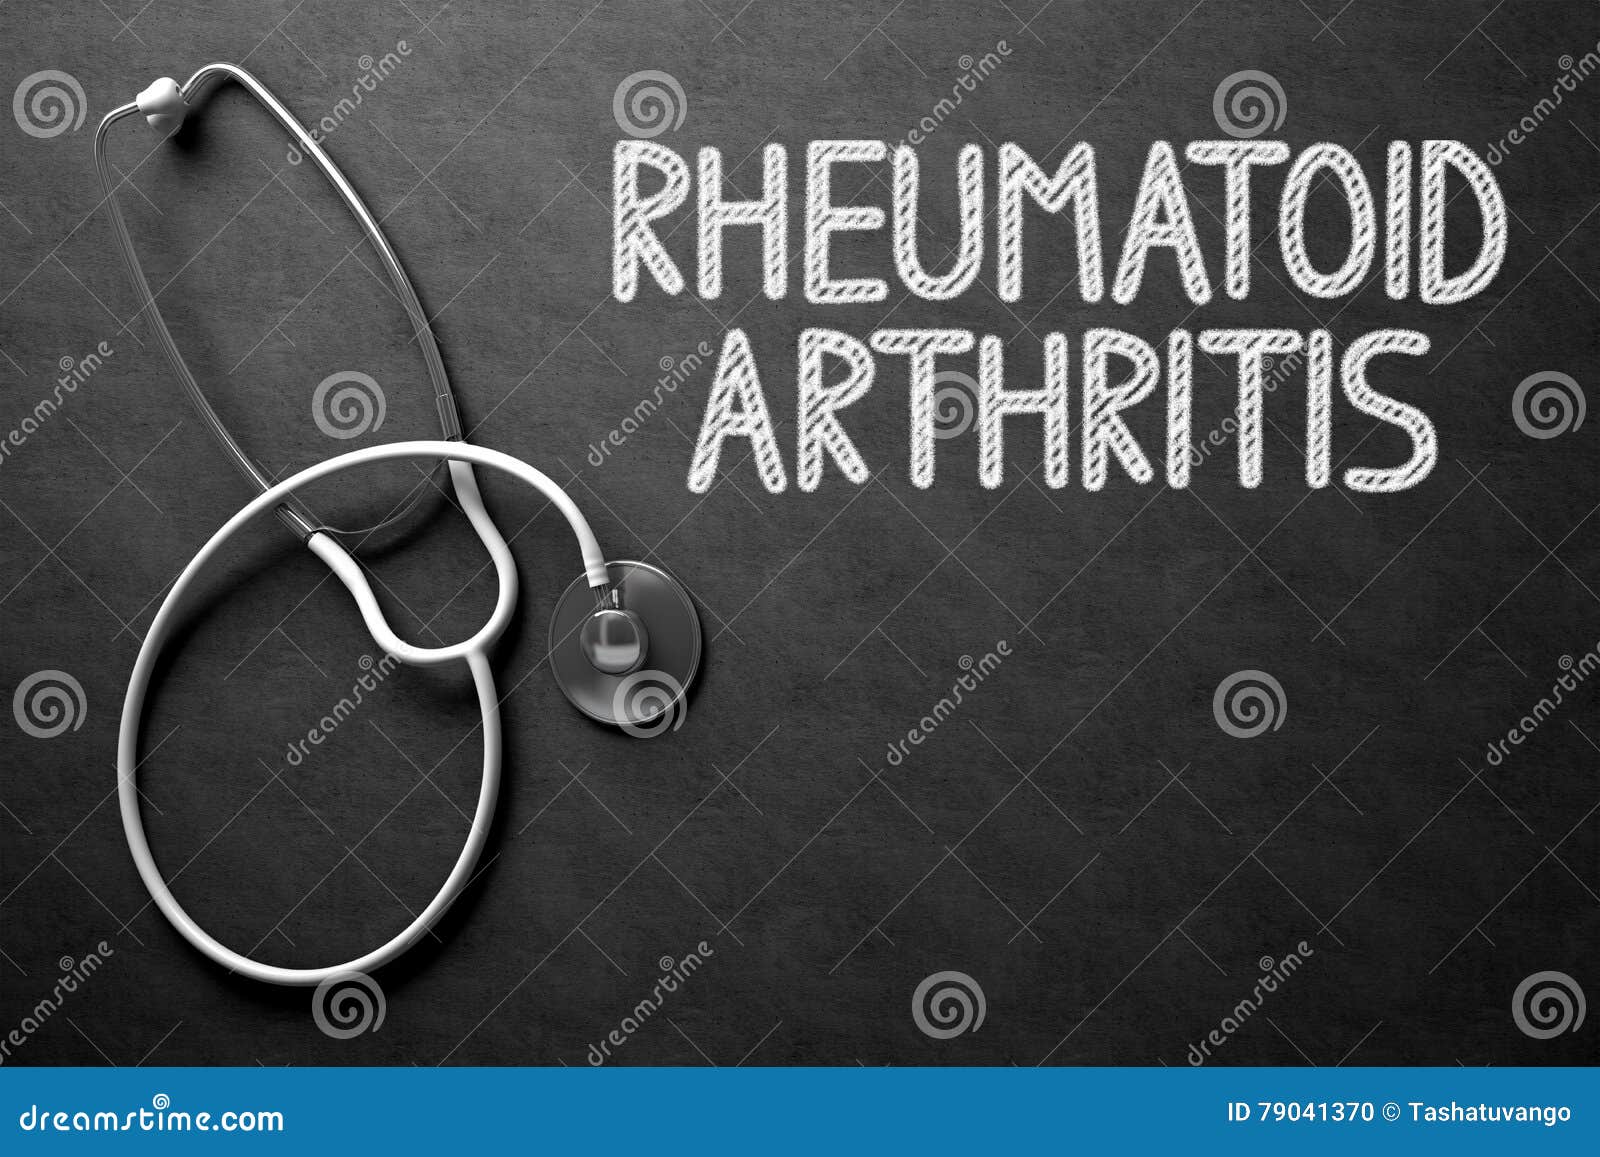 rheumatoid arthritis - text on chalkboard. 3d .